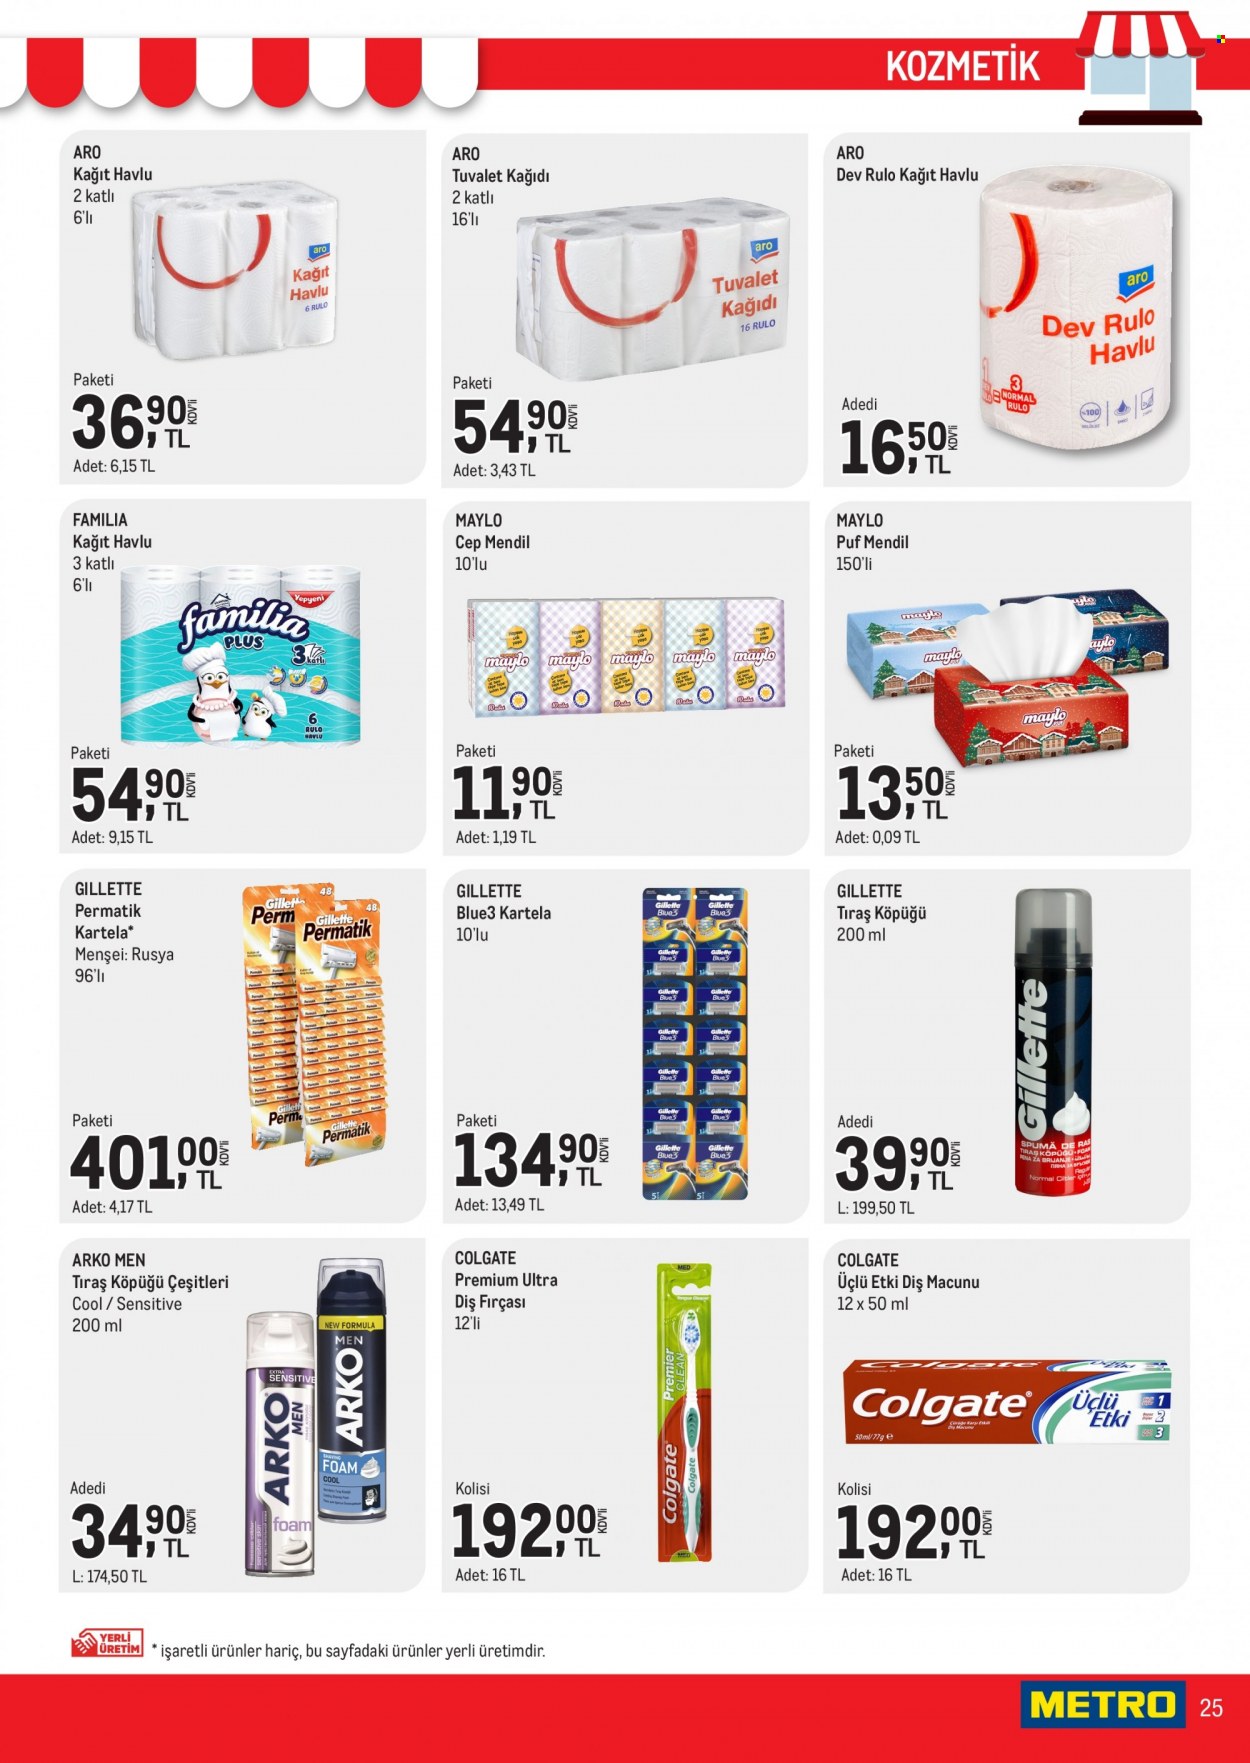 thumbnail - Metro aktüel ürünler, broşür  - 3.16.2023 - 3.31.2023 - Satıştaki ürünler - tıraş köpüğü, Colgate, diş fırçası, diş macunu, Gillette, fırça. Sayfa 25.